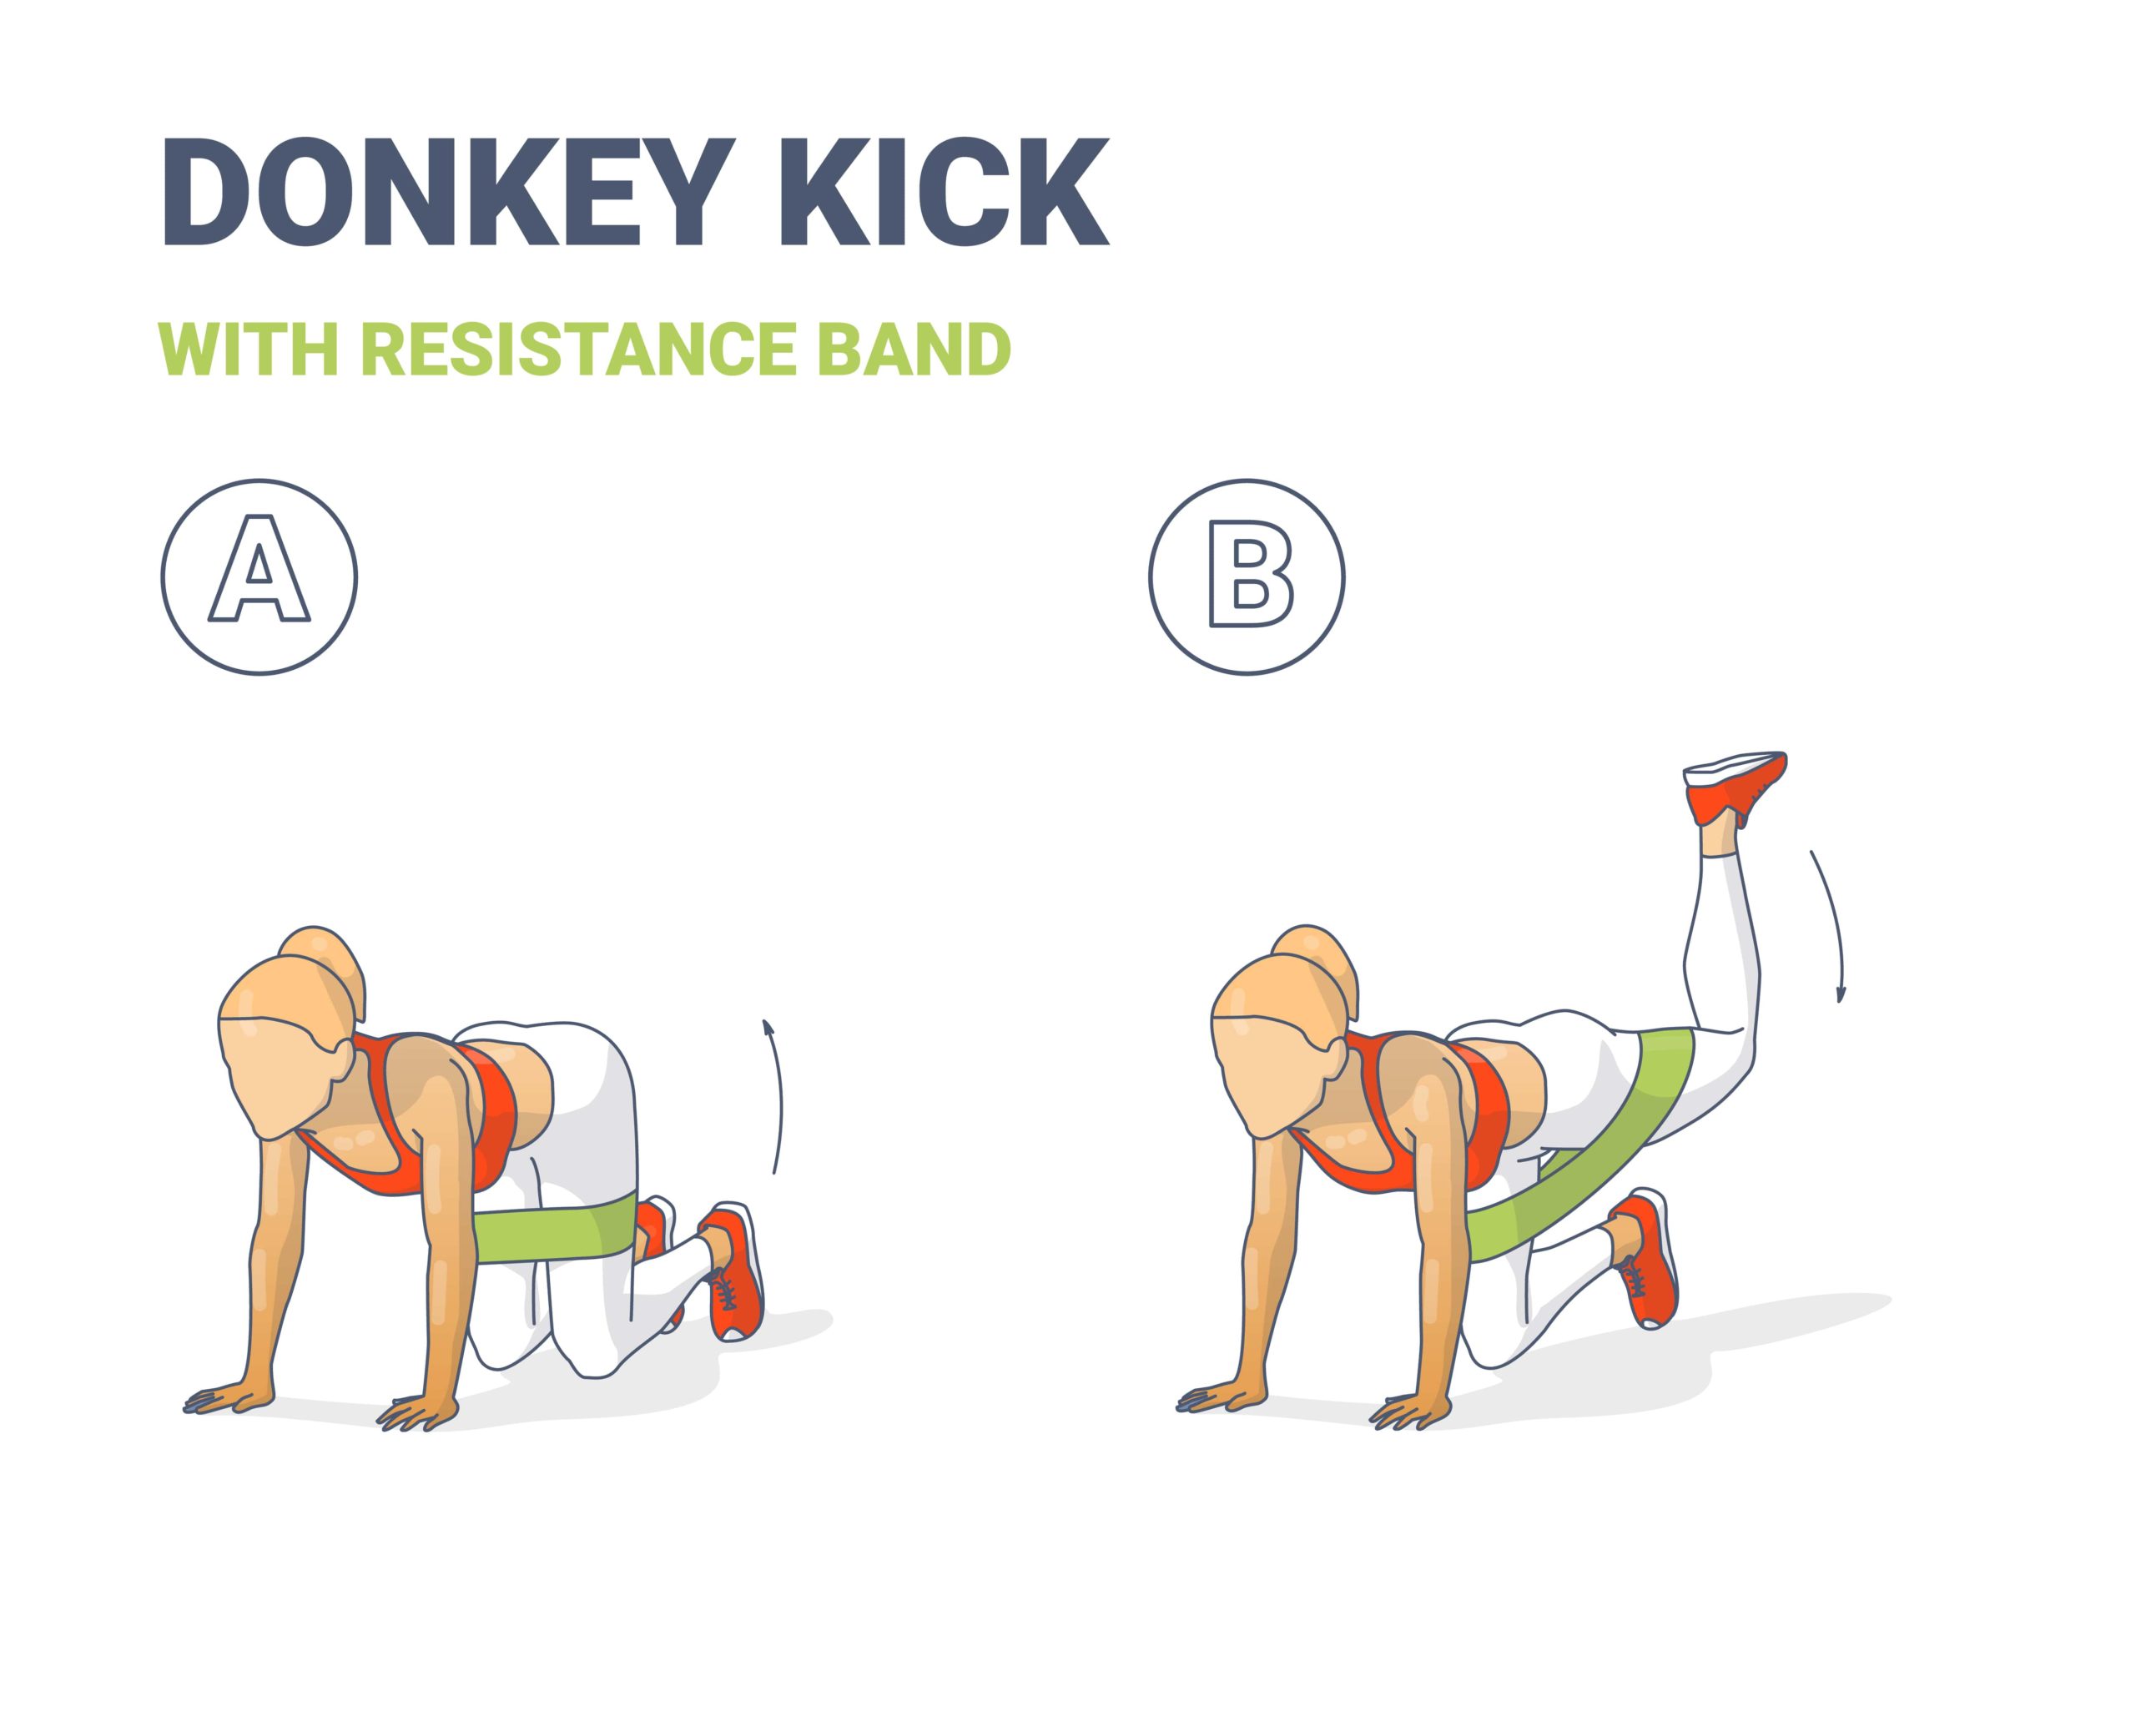 Exercice n°5 : Les donkey kicks